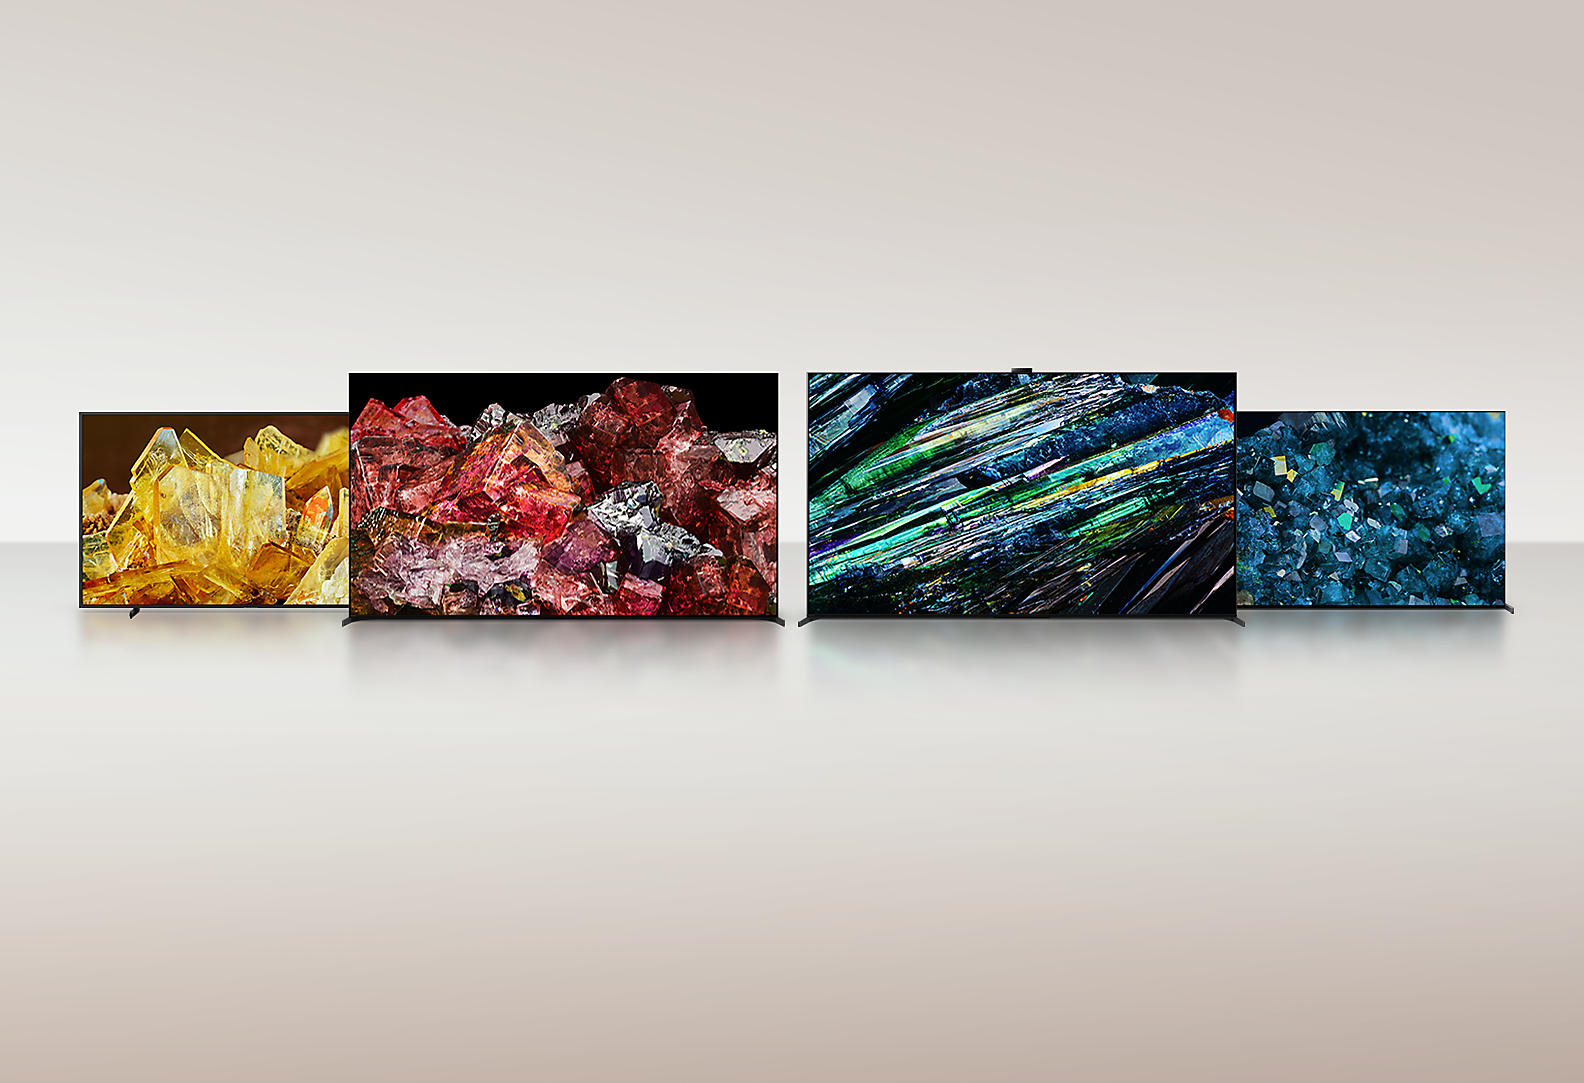 Quatre téléviseurs BRAVIA XR affichant les incroyables détails et couleurs d’images plein écran de différents types de cristaux